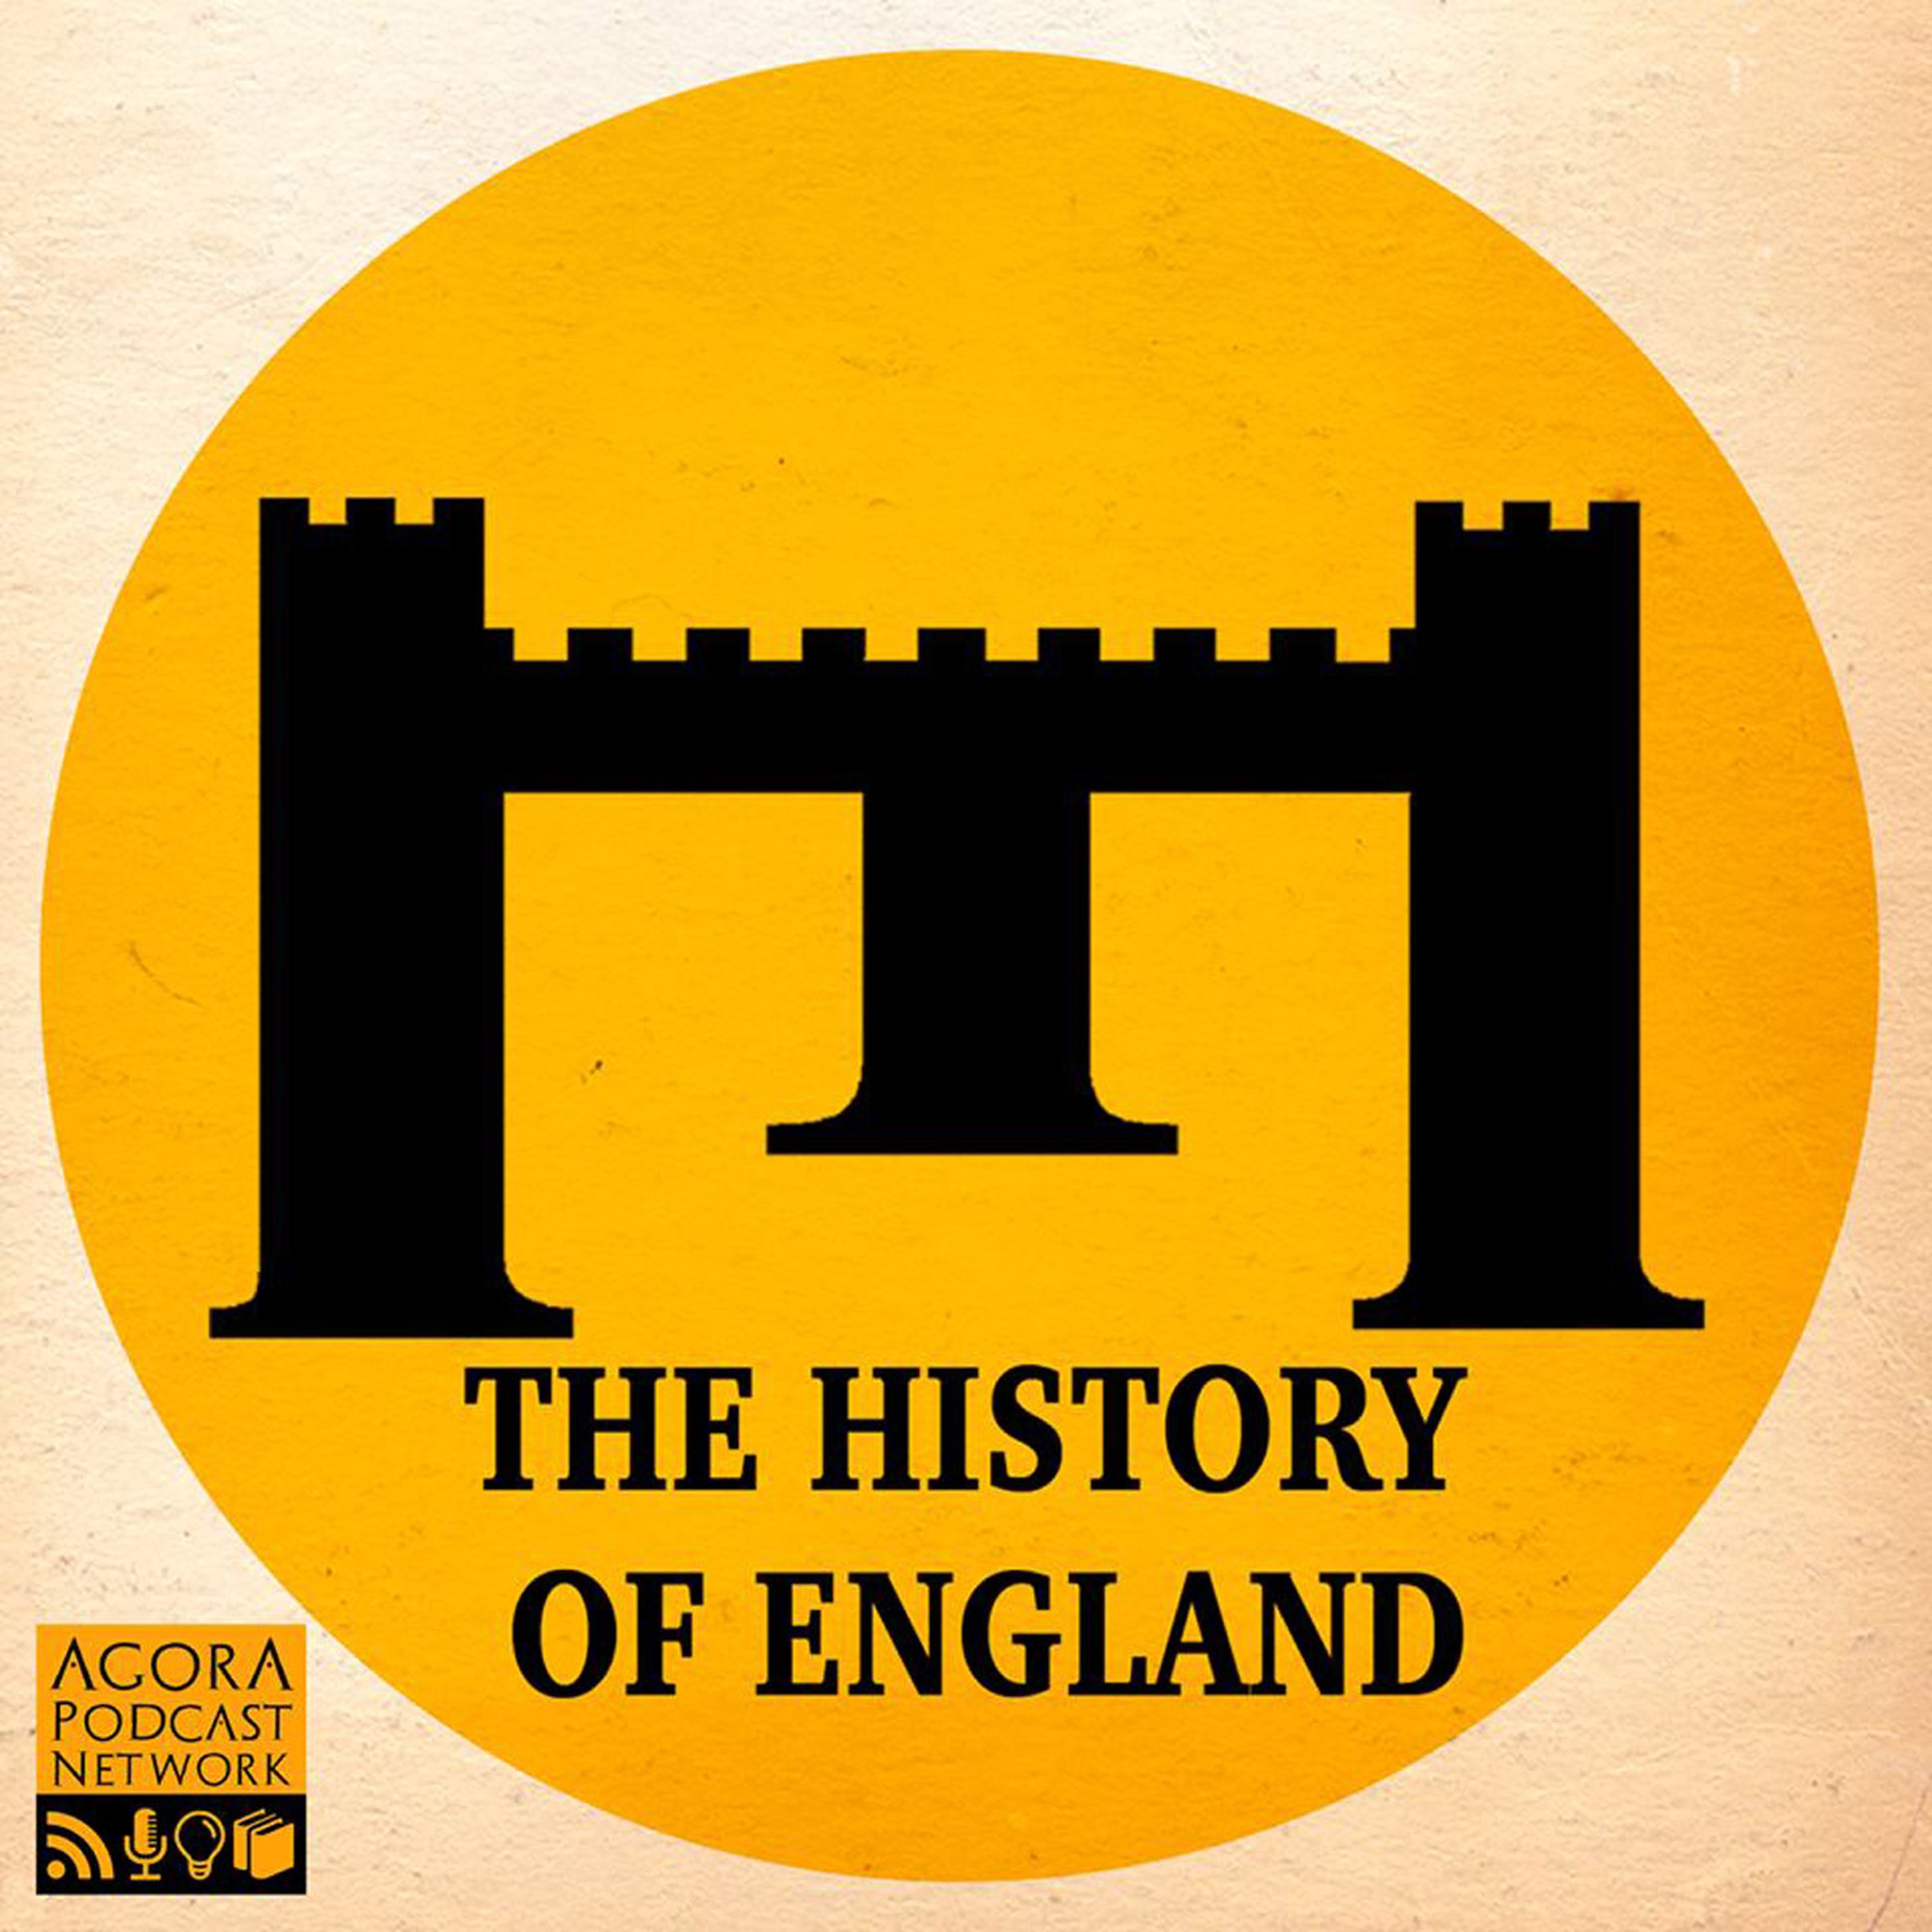 1.0 - 1 Anglo Saxons England 500-1066